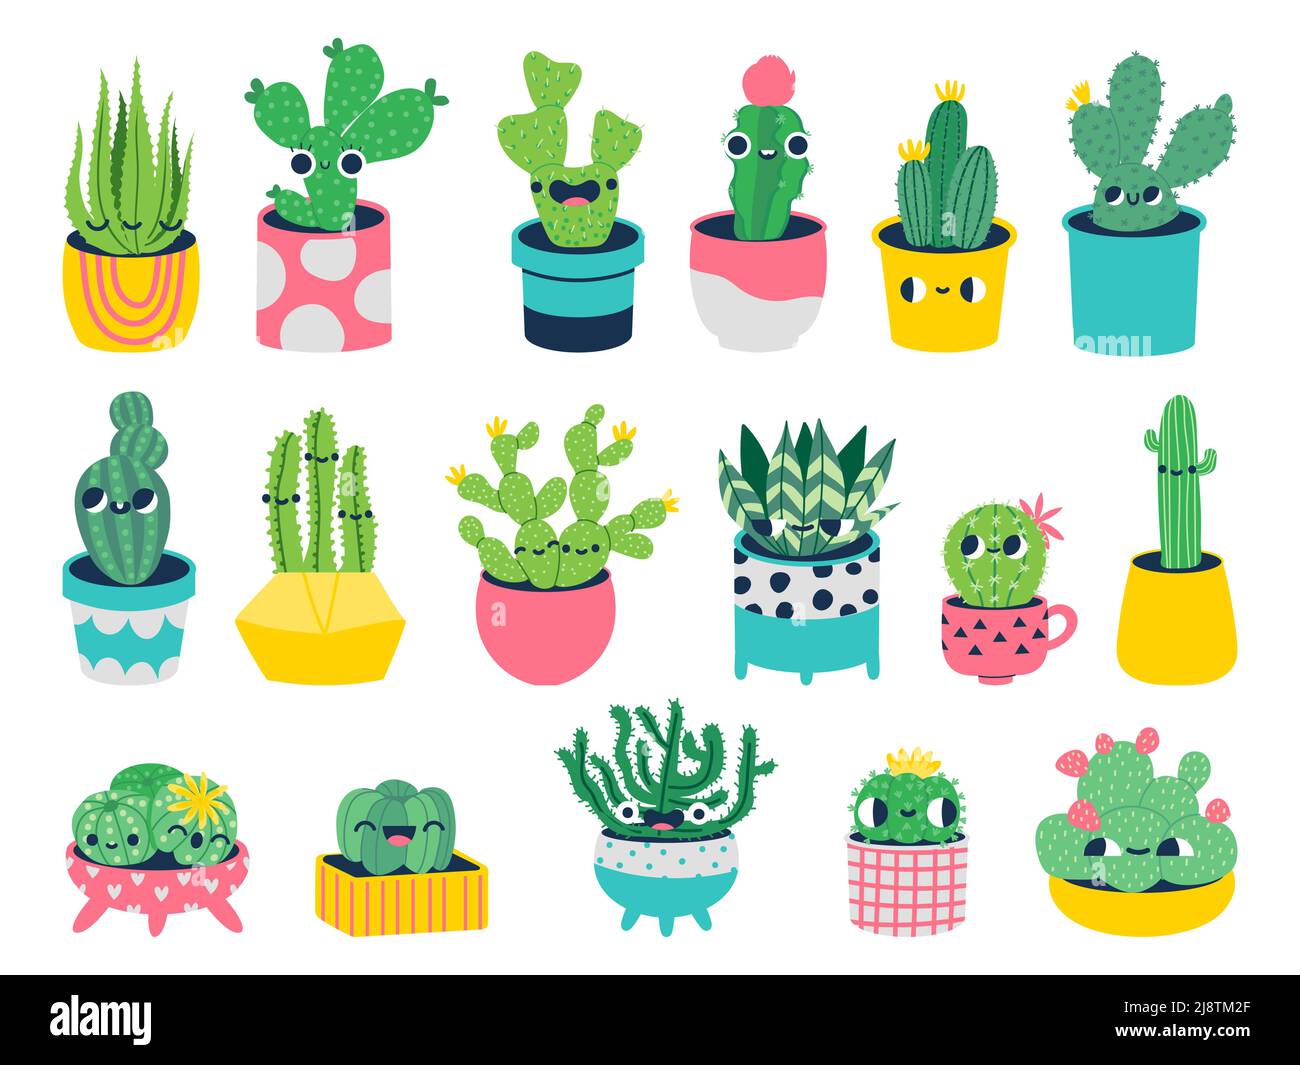 Kaktus mit Gesichtern. Niedliche Comic-Figuren in Töpfen mit lustigen Gesichtern, Smiley Maskottchen Pflanzen für Kinder Illustration. Vektorset Stock Vektor